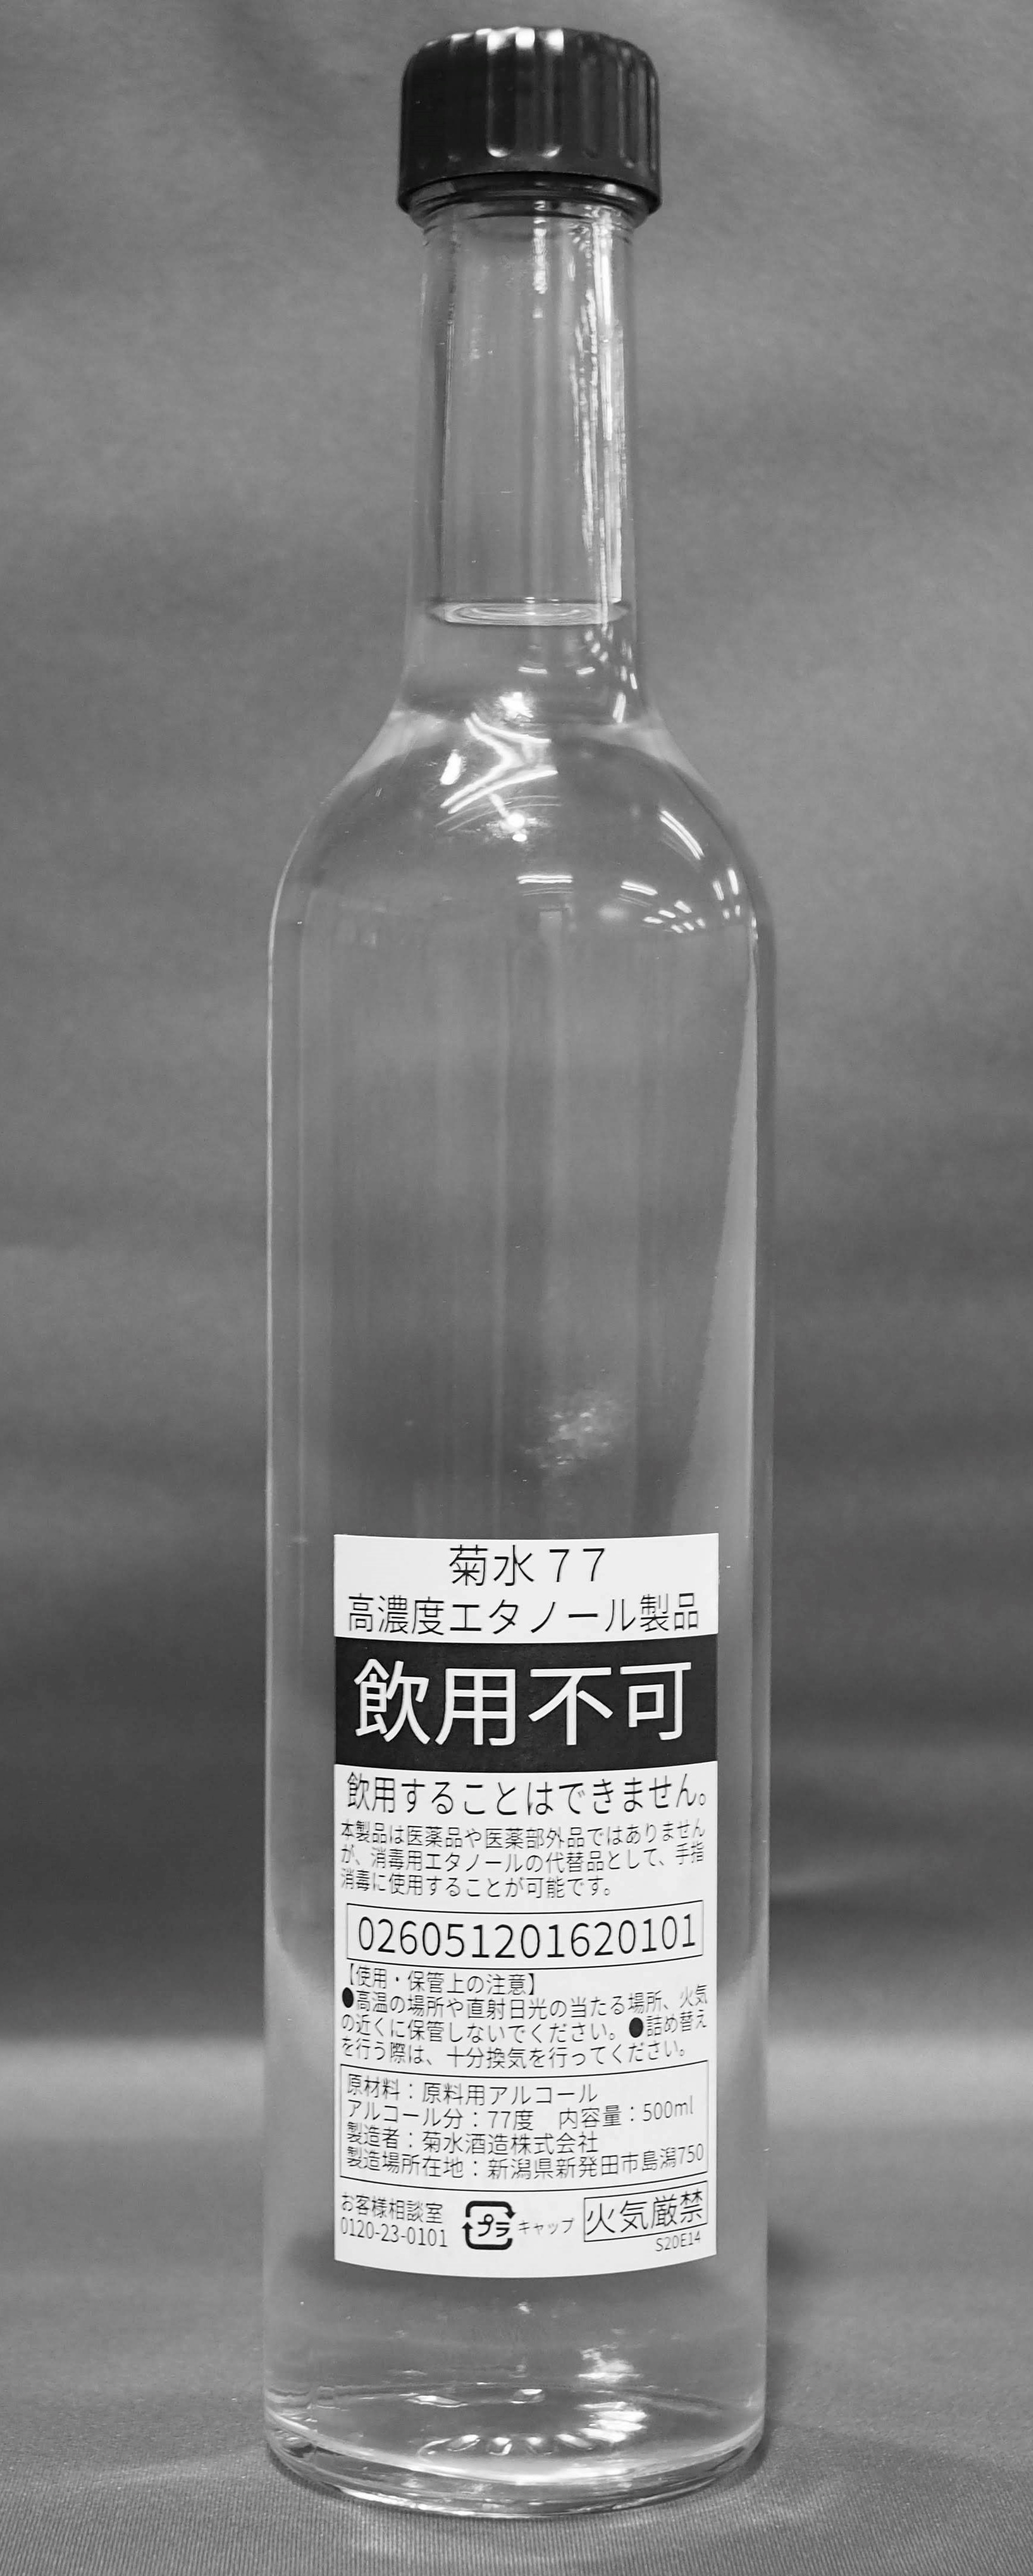 高濃度エタノール『菊水77』を新発田市に寄贈しました｜菊水酒造